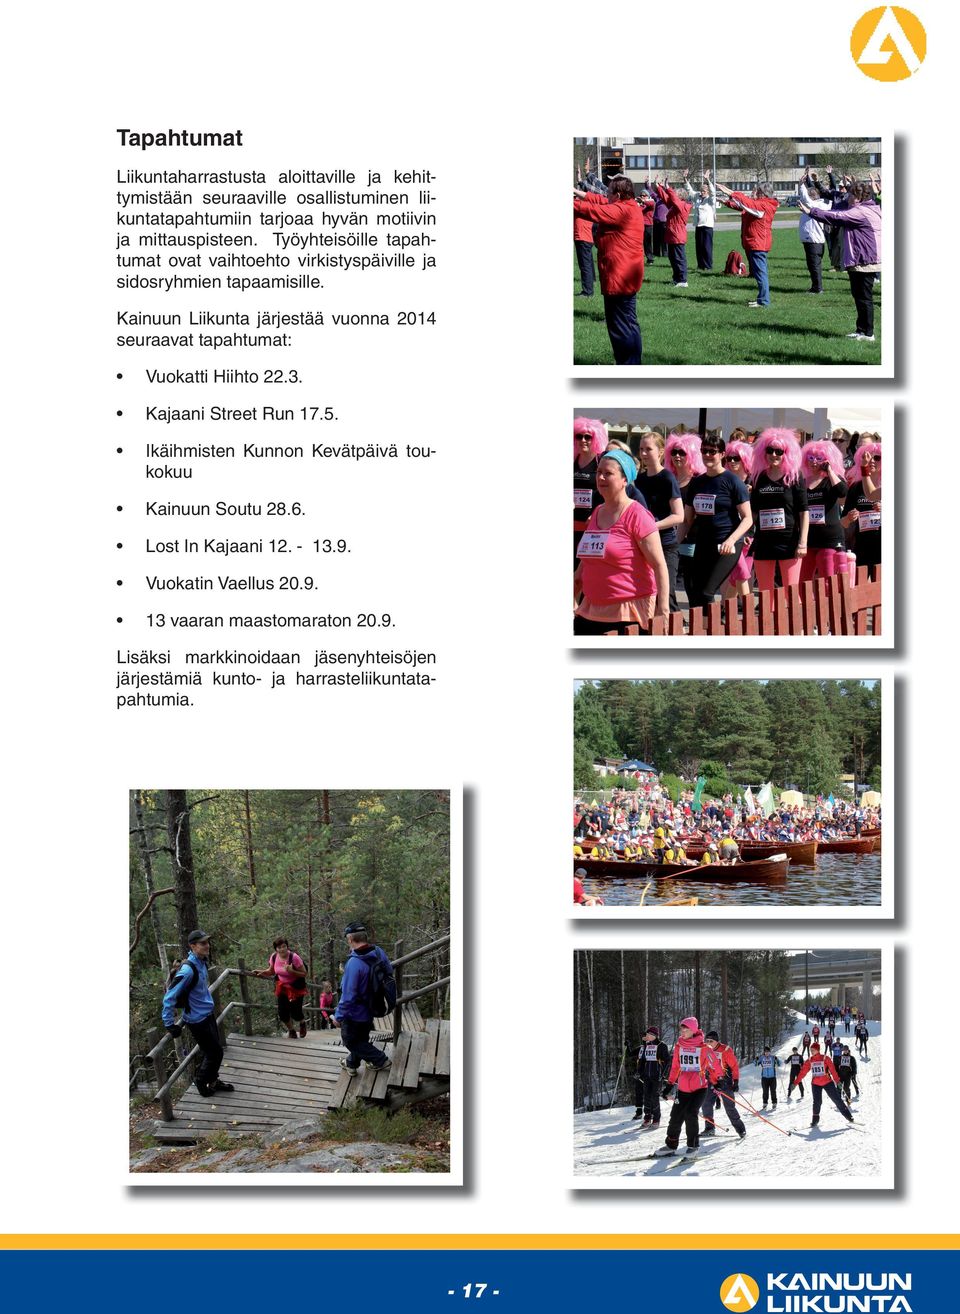 Kainuun Liikunta järjestää vuonna 2014 seuraavat tapahtumat: Vuokatti Hiihto 22.3. Kajaani Street Run 17.5.